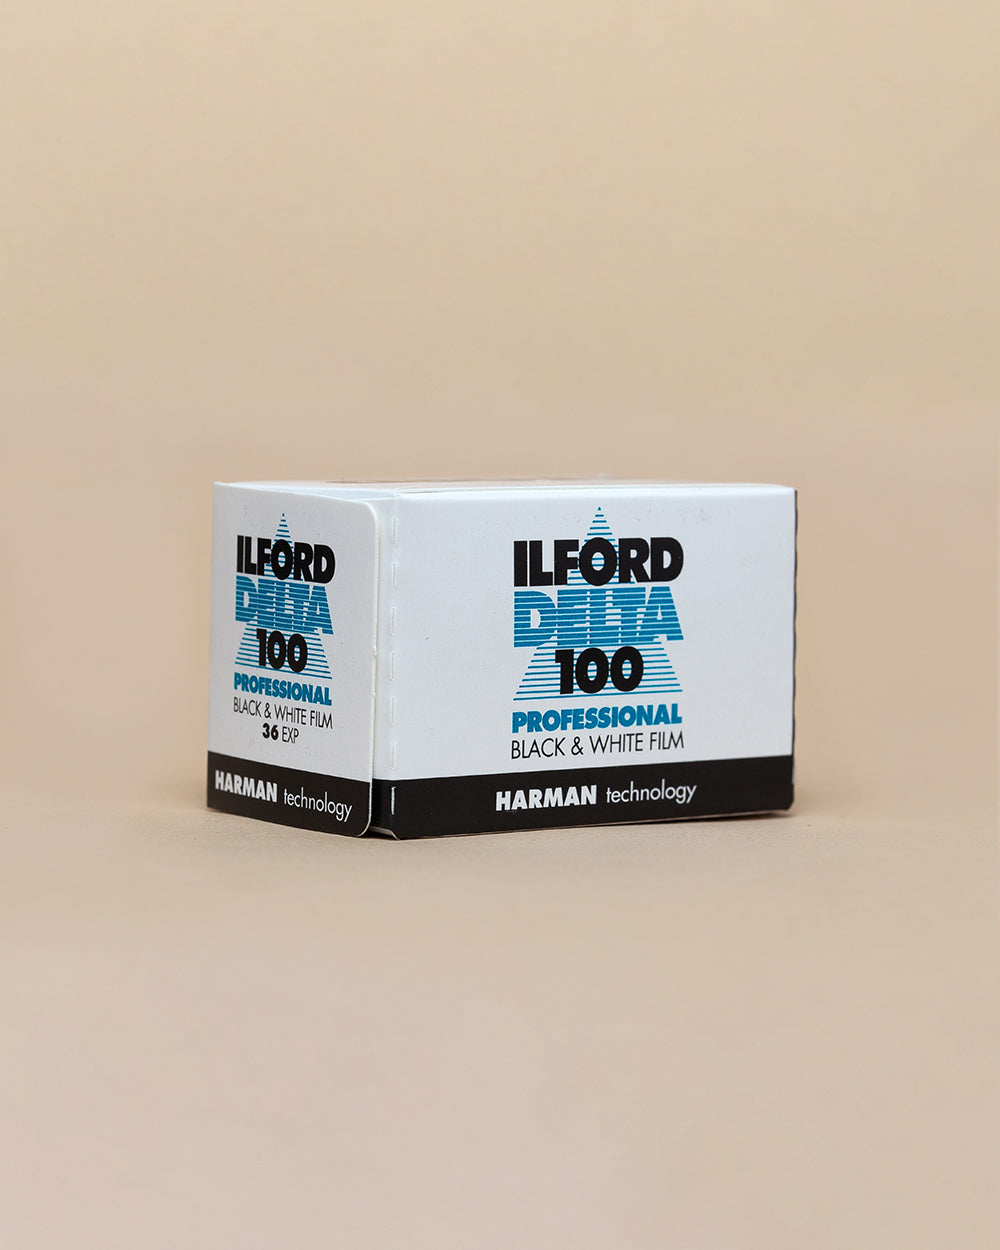 Ilford Delta 100 (36 exp)